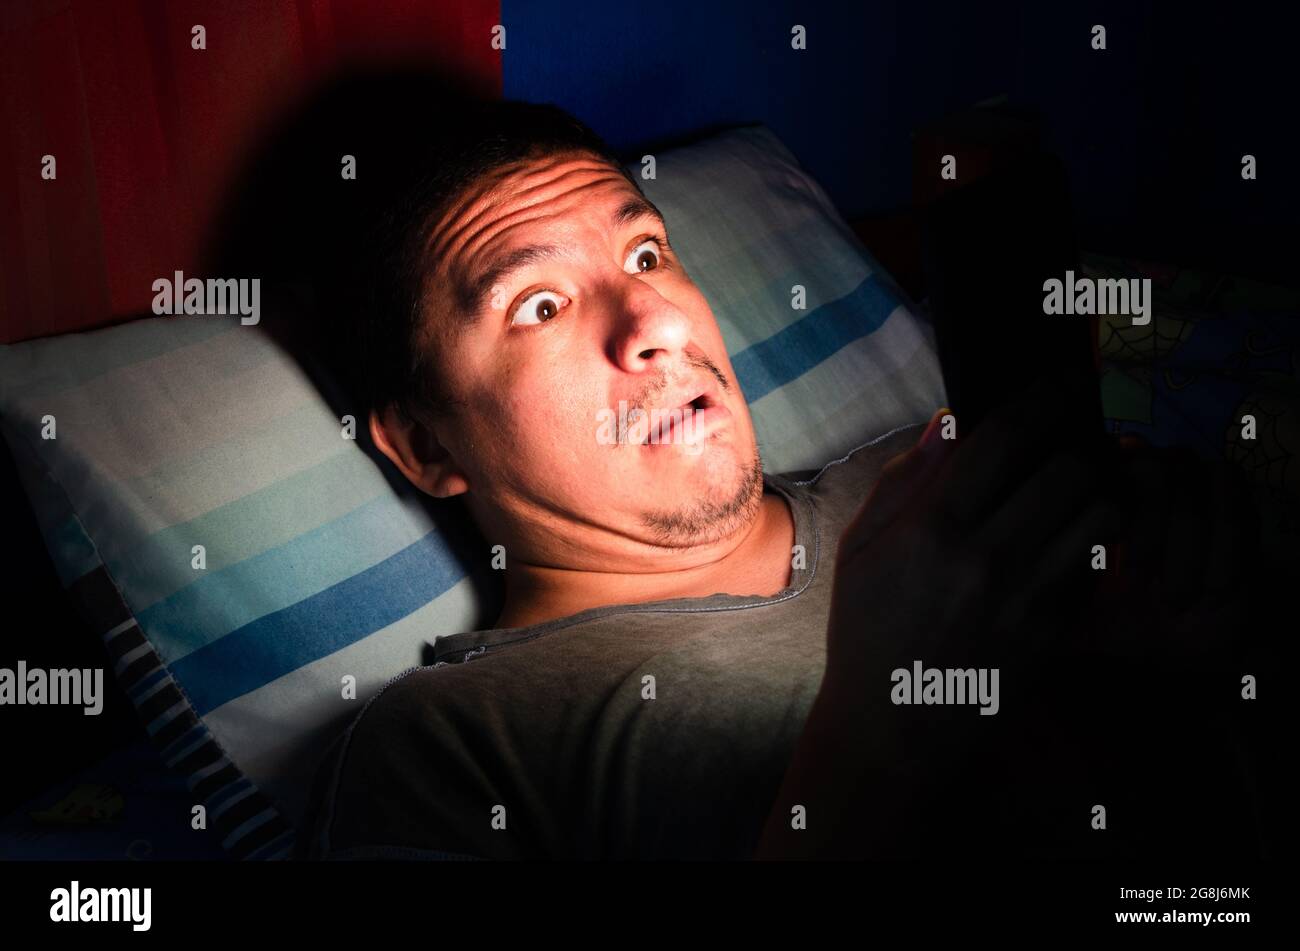 Un homme anxieux et éveillé regarde son téléphone la nuit dans le noir. Banque D'Images